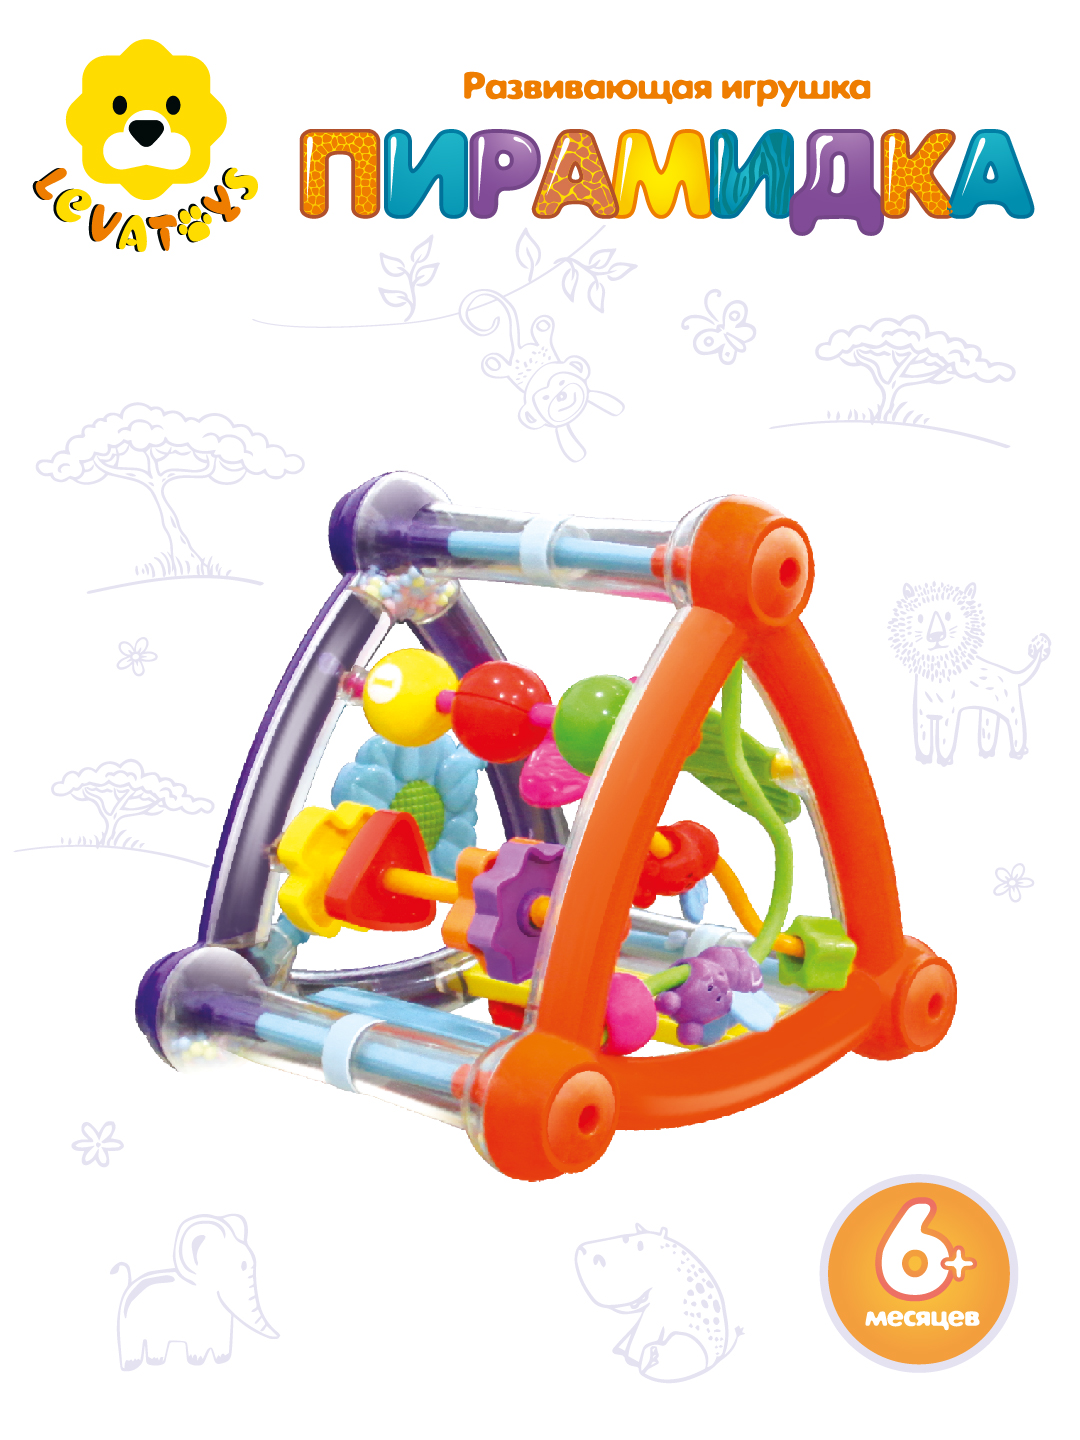 Бизиборд для малышей Levatoys развивающая игрушка Пирамидка 5 игровых зон - фото 1